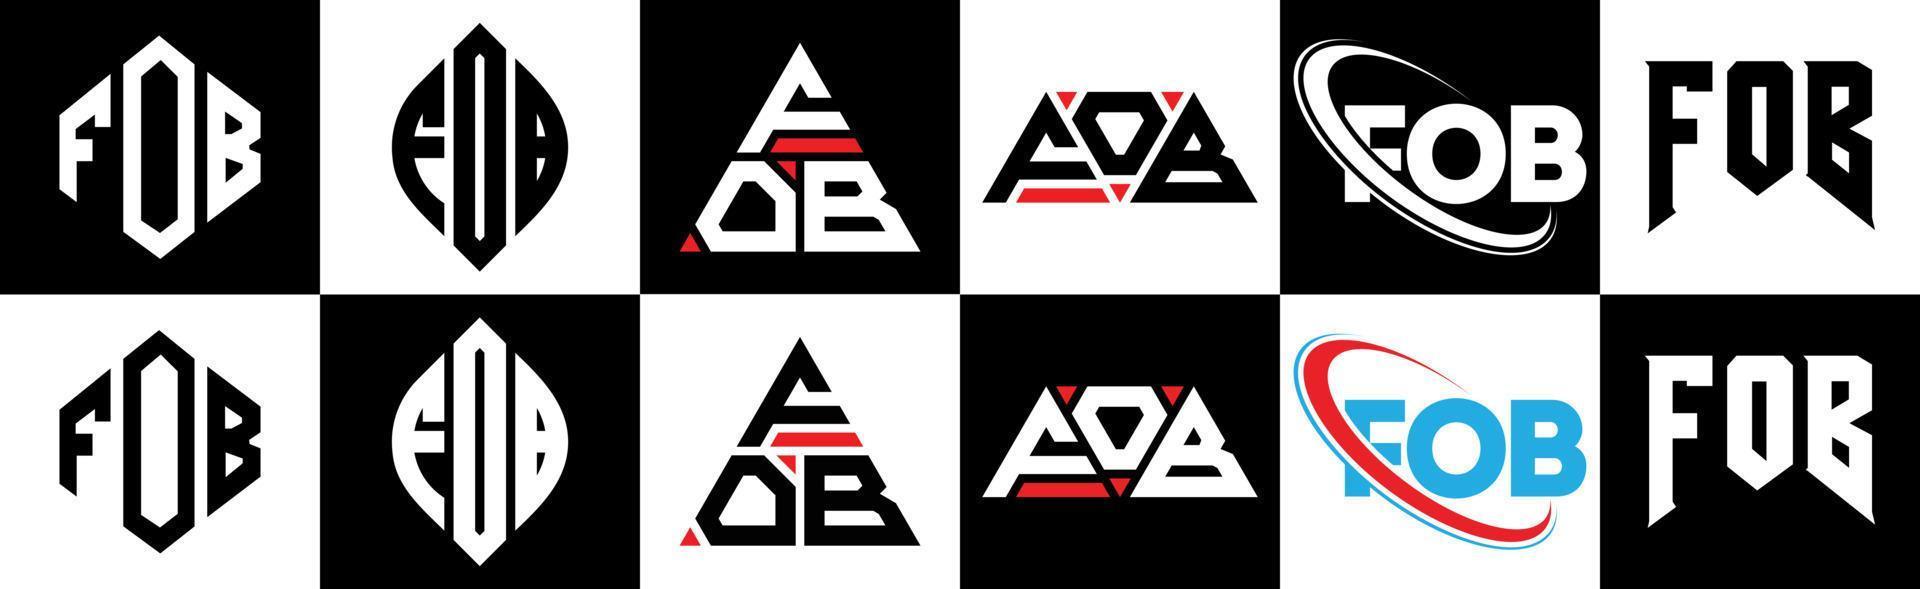 Fob-Buchstaben-Logo-Design in sechs Stilen. Schlüsselanhänger Polygon, Kreis, Dreieck, Sechseck, flacher und einfacher Stil mit schwarz-weißem Buchstabenlogo in einer Zeichenfläche. fob minimalistisches und klassisches logo vektor